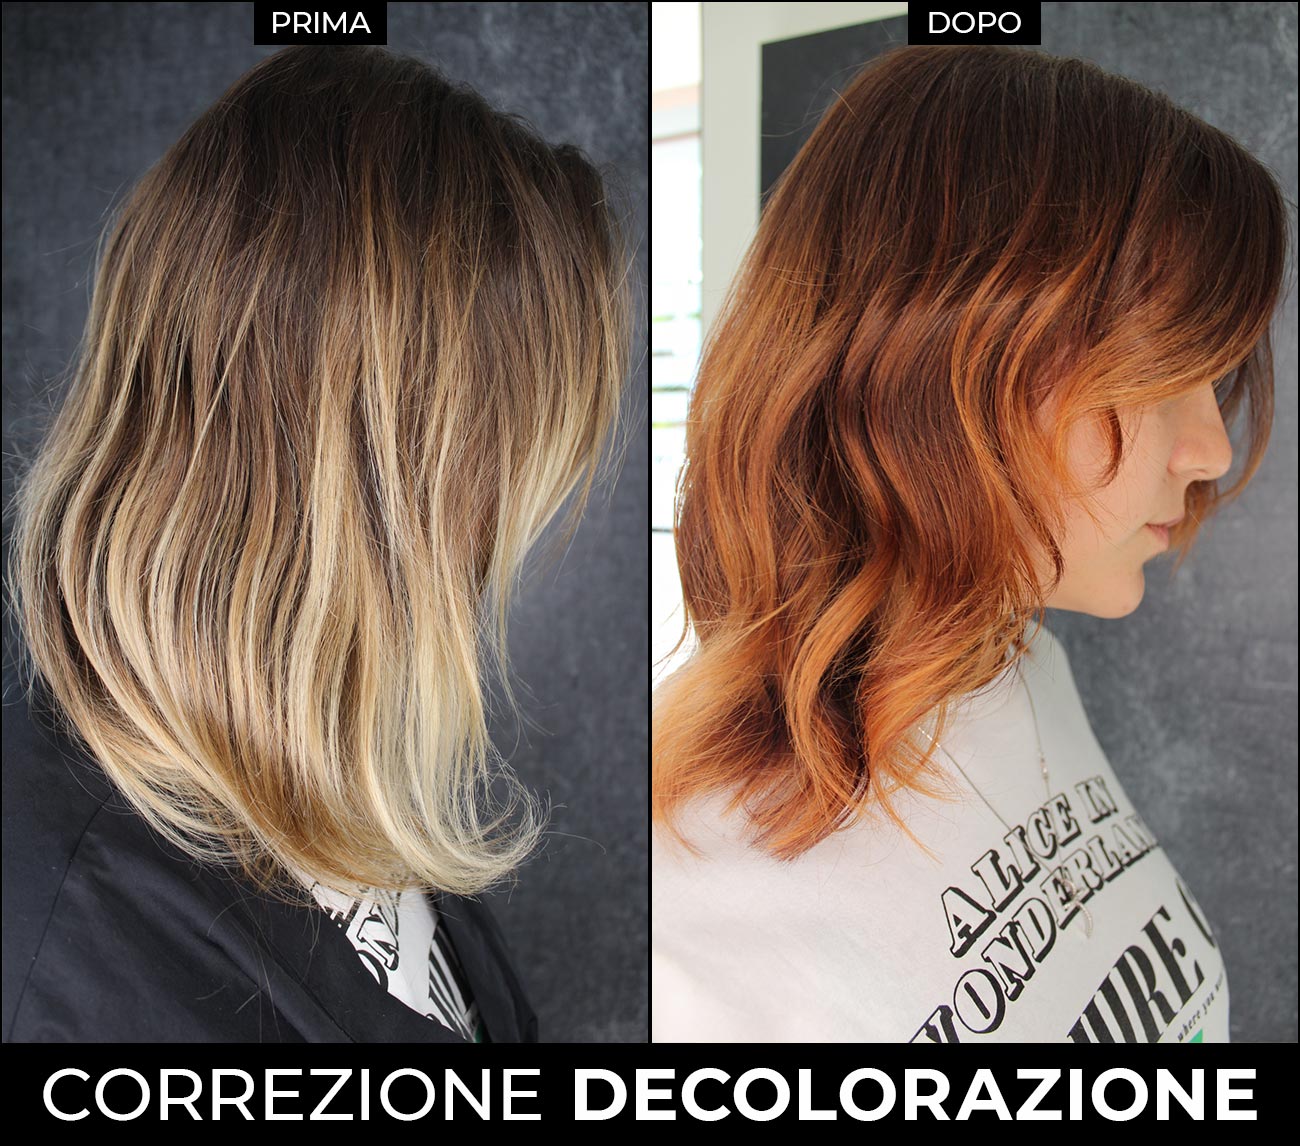 Correzione decolorazione a Bari | MASAMI - HAIR & BEAUTY